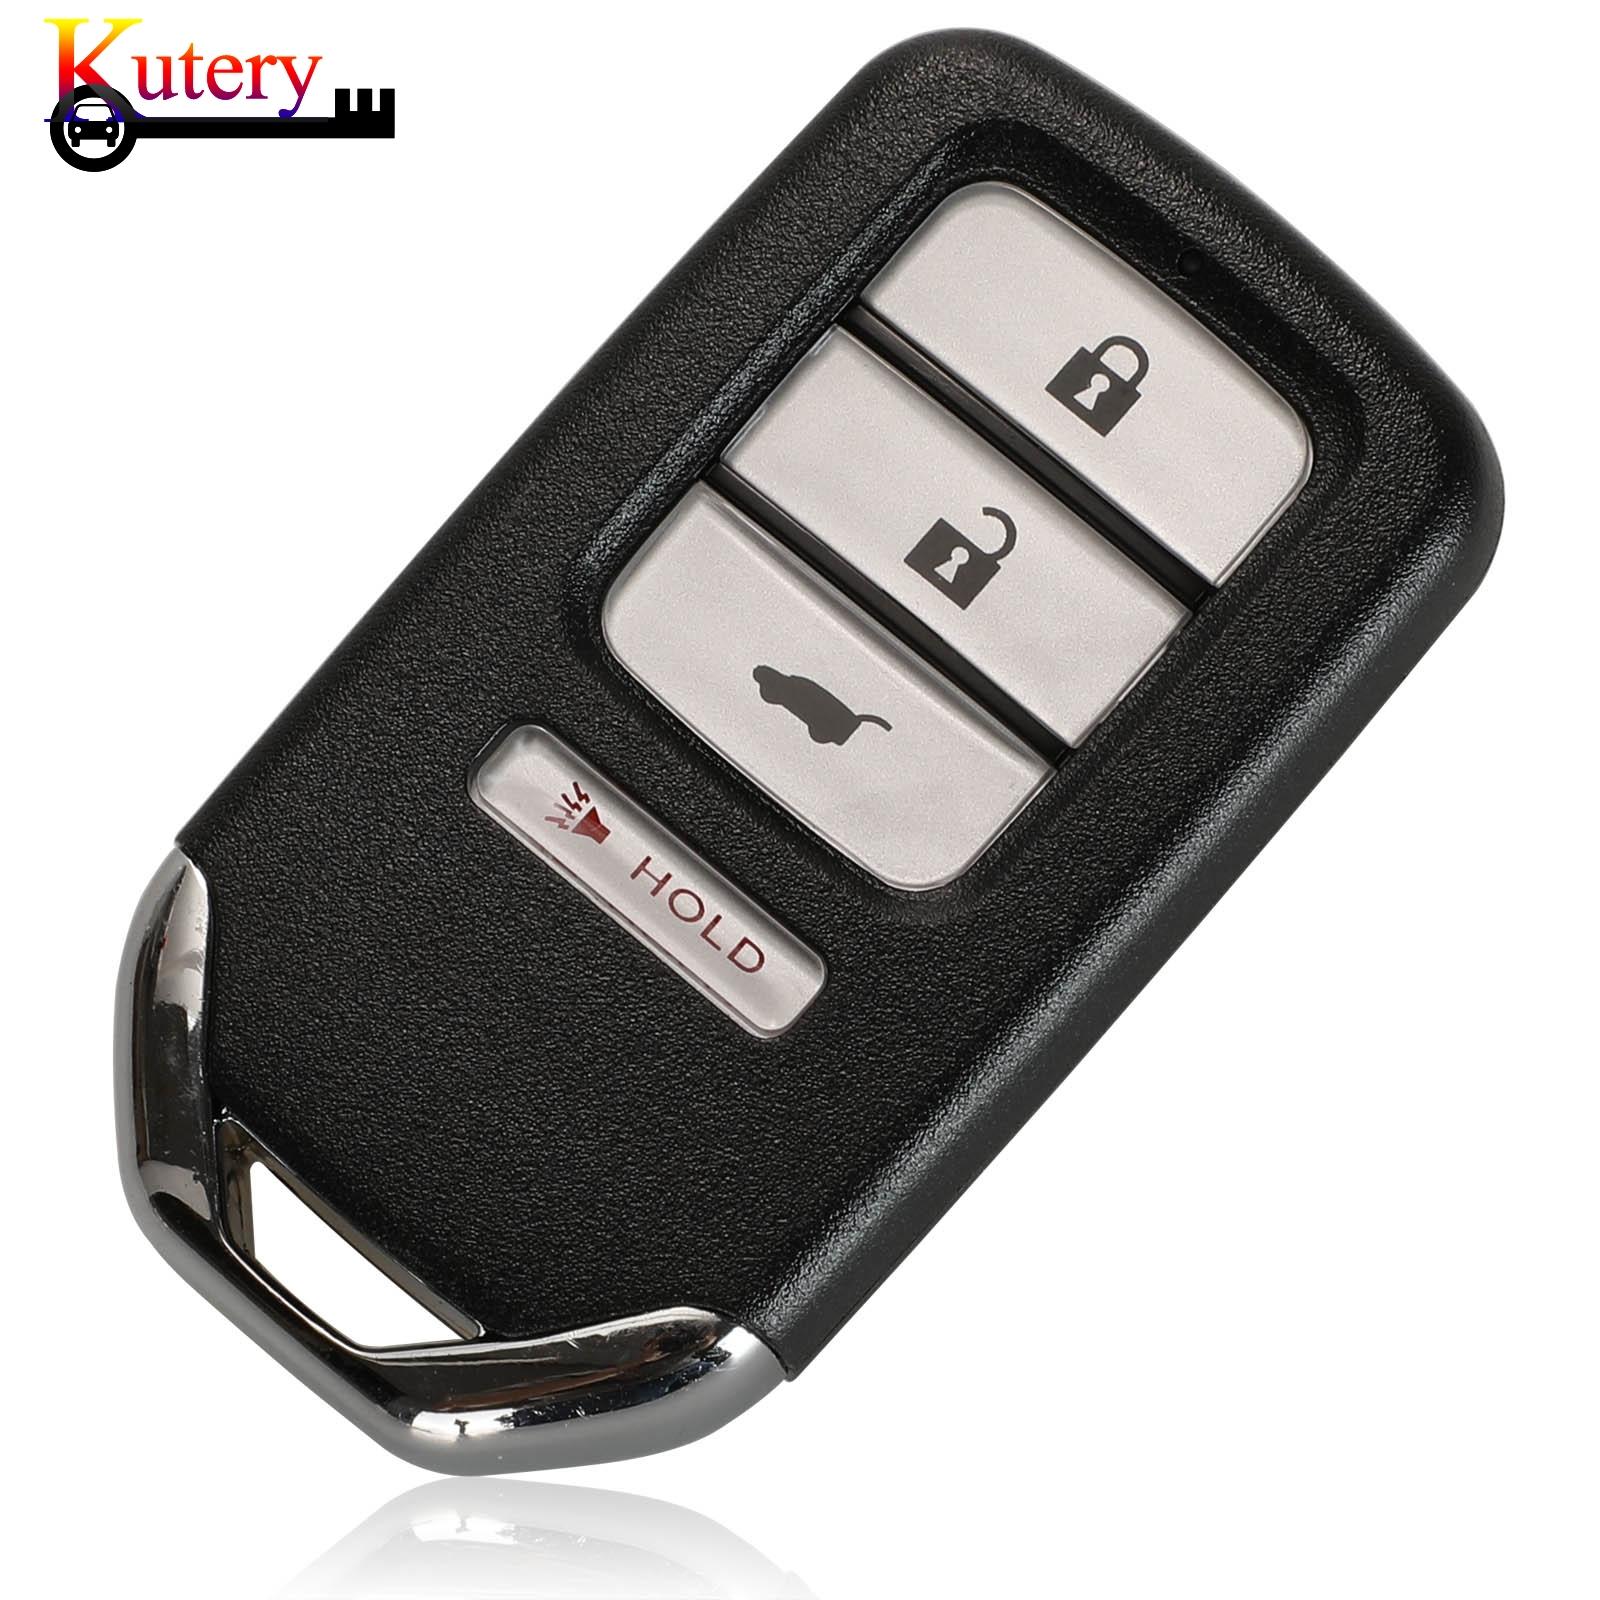 Изображение товара: Пульт дистанционного управления для автомобиля Kutery, 5 шт./лот, для Honda City Accord HR-V, 4 кнопки, 313,8/433,92 МГц, чип ID47, 72147-T9A-X01, KR5V1X